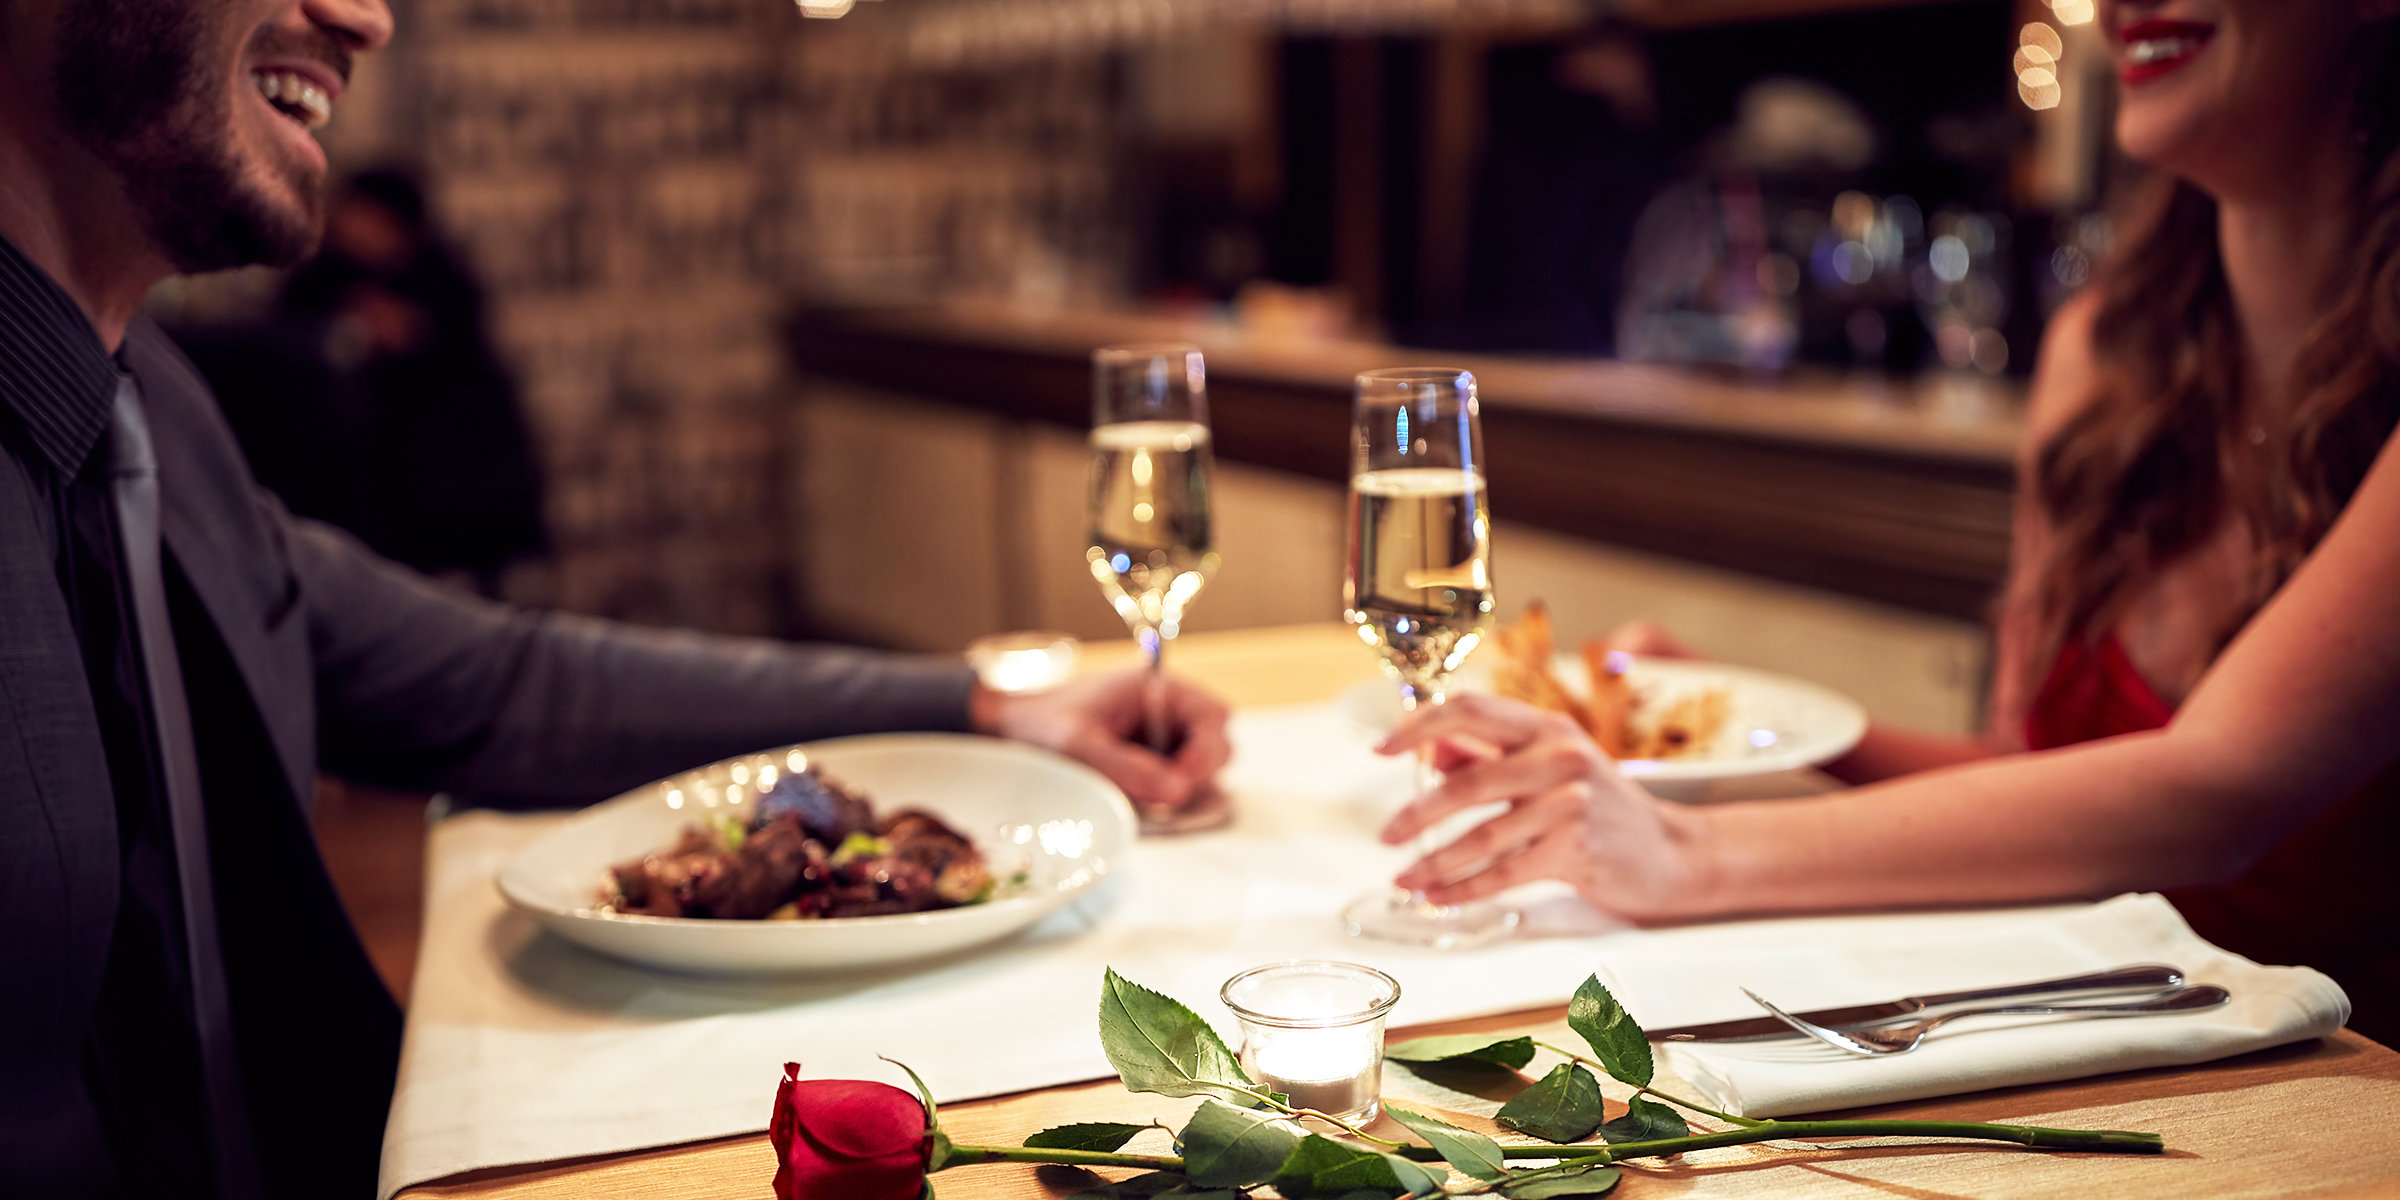 Un couple qui prend un dîner romantique | Source : Shutterstock